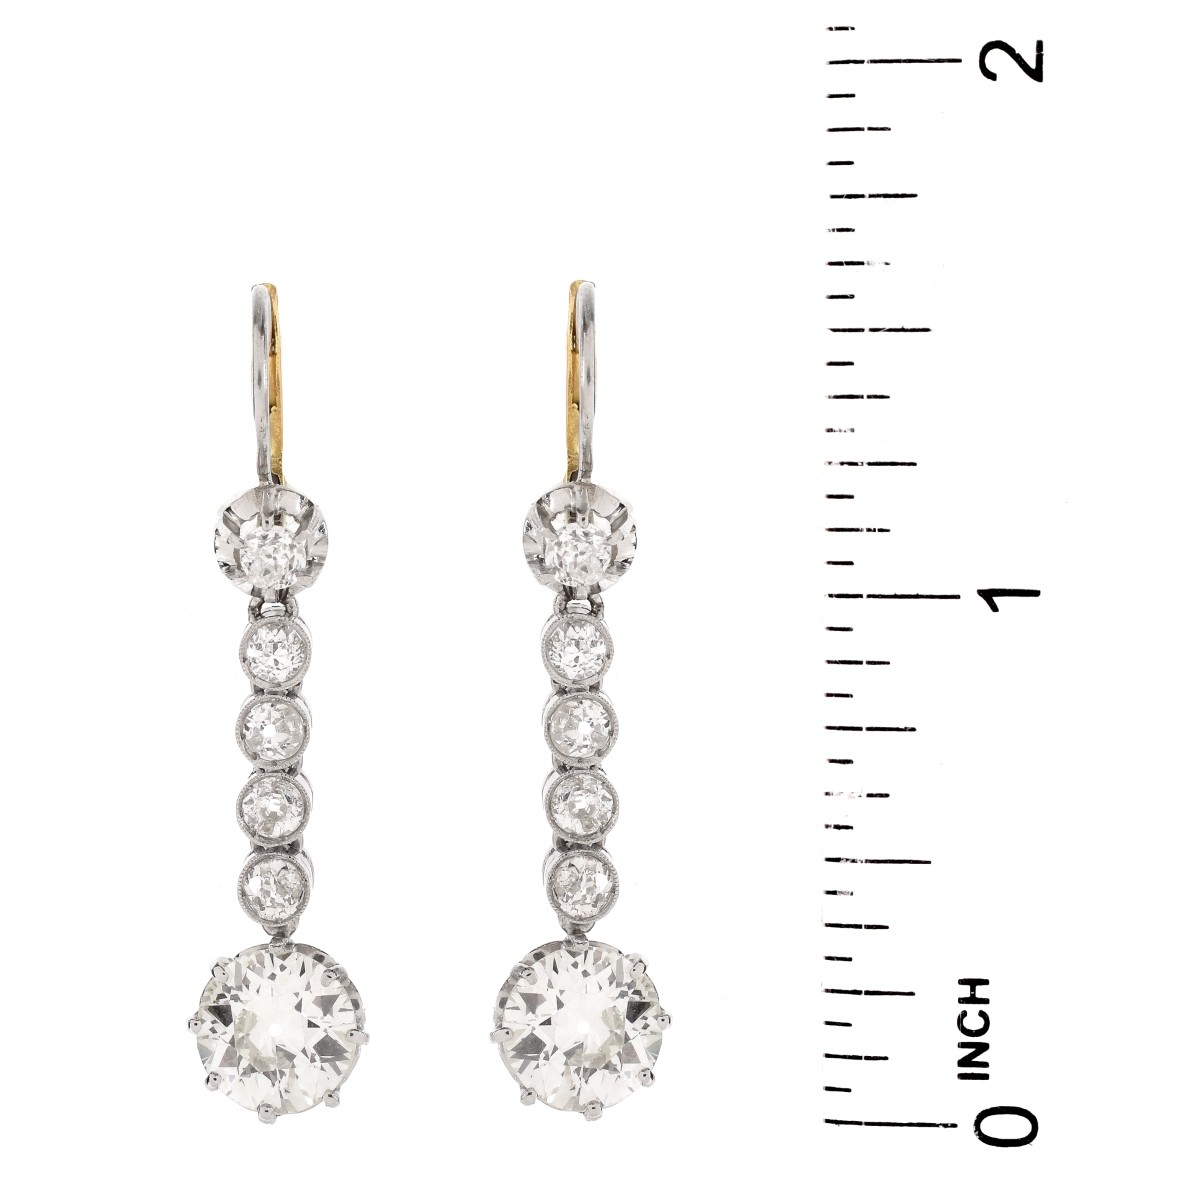 Approx. 5.1ct TW Diamond Earrings